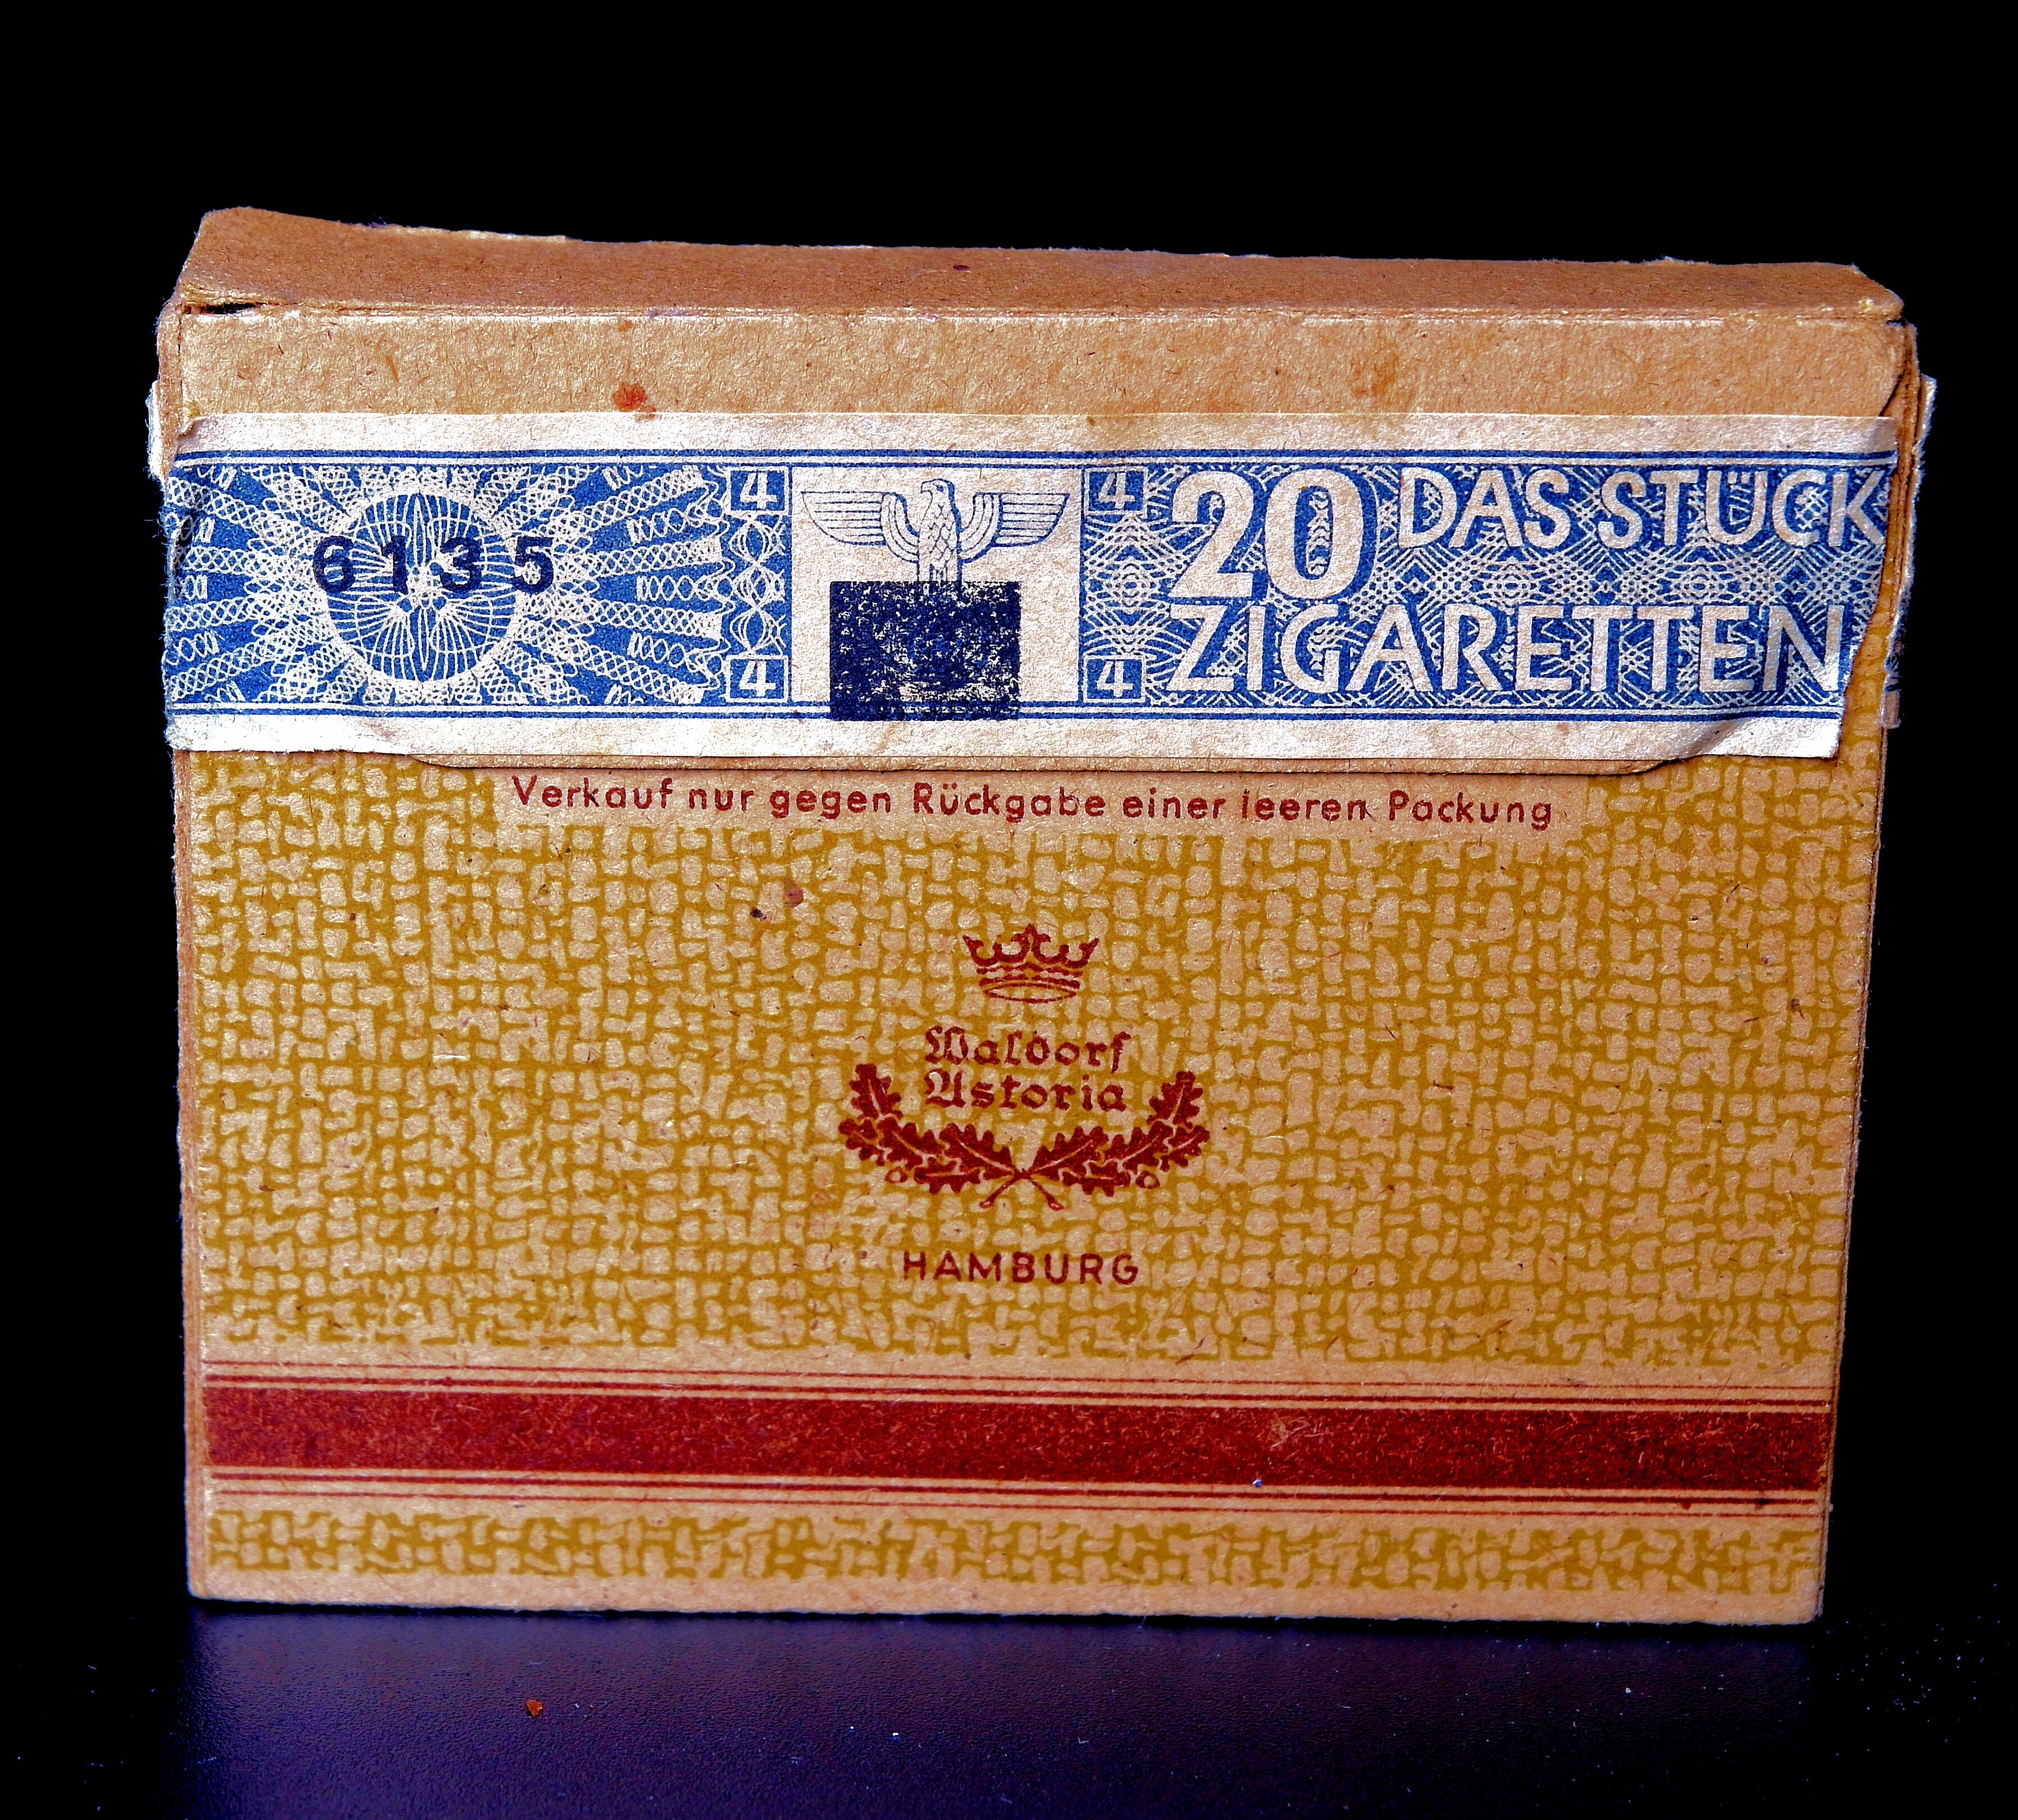 Zigarettenmarke	Astor Waldorf Astoria	- Echt Orient No. 5 (Volkskunde- und Freilichtmuseum Roscheider Hof CC0)